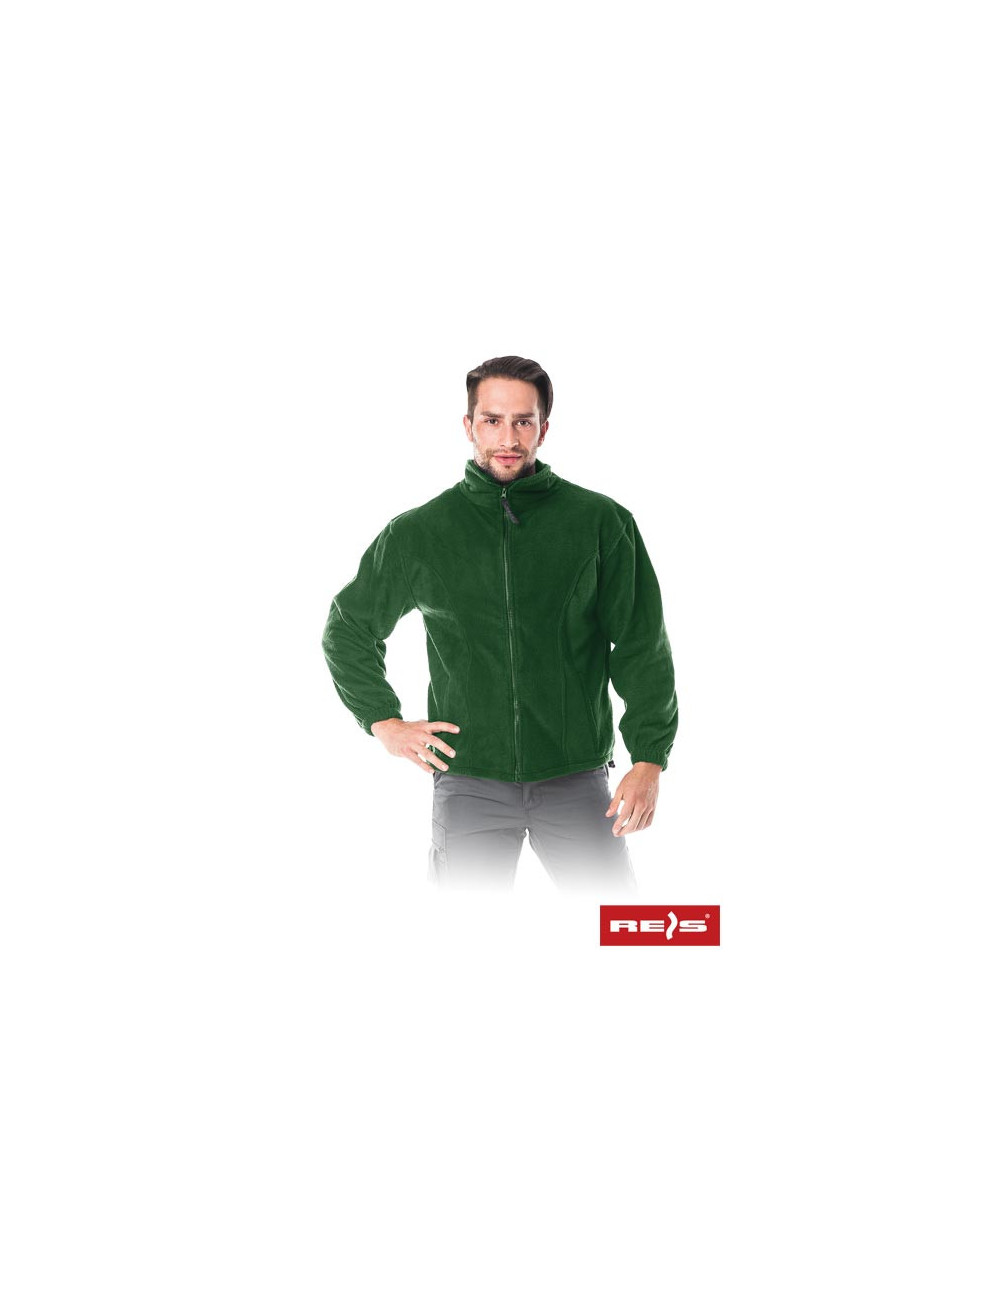 Schützendes Fleece-Sweatshirt mit grünem Reis